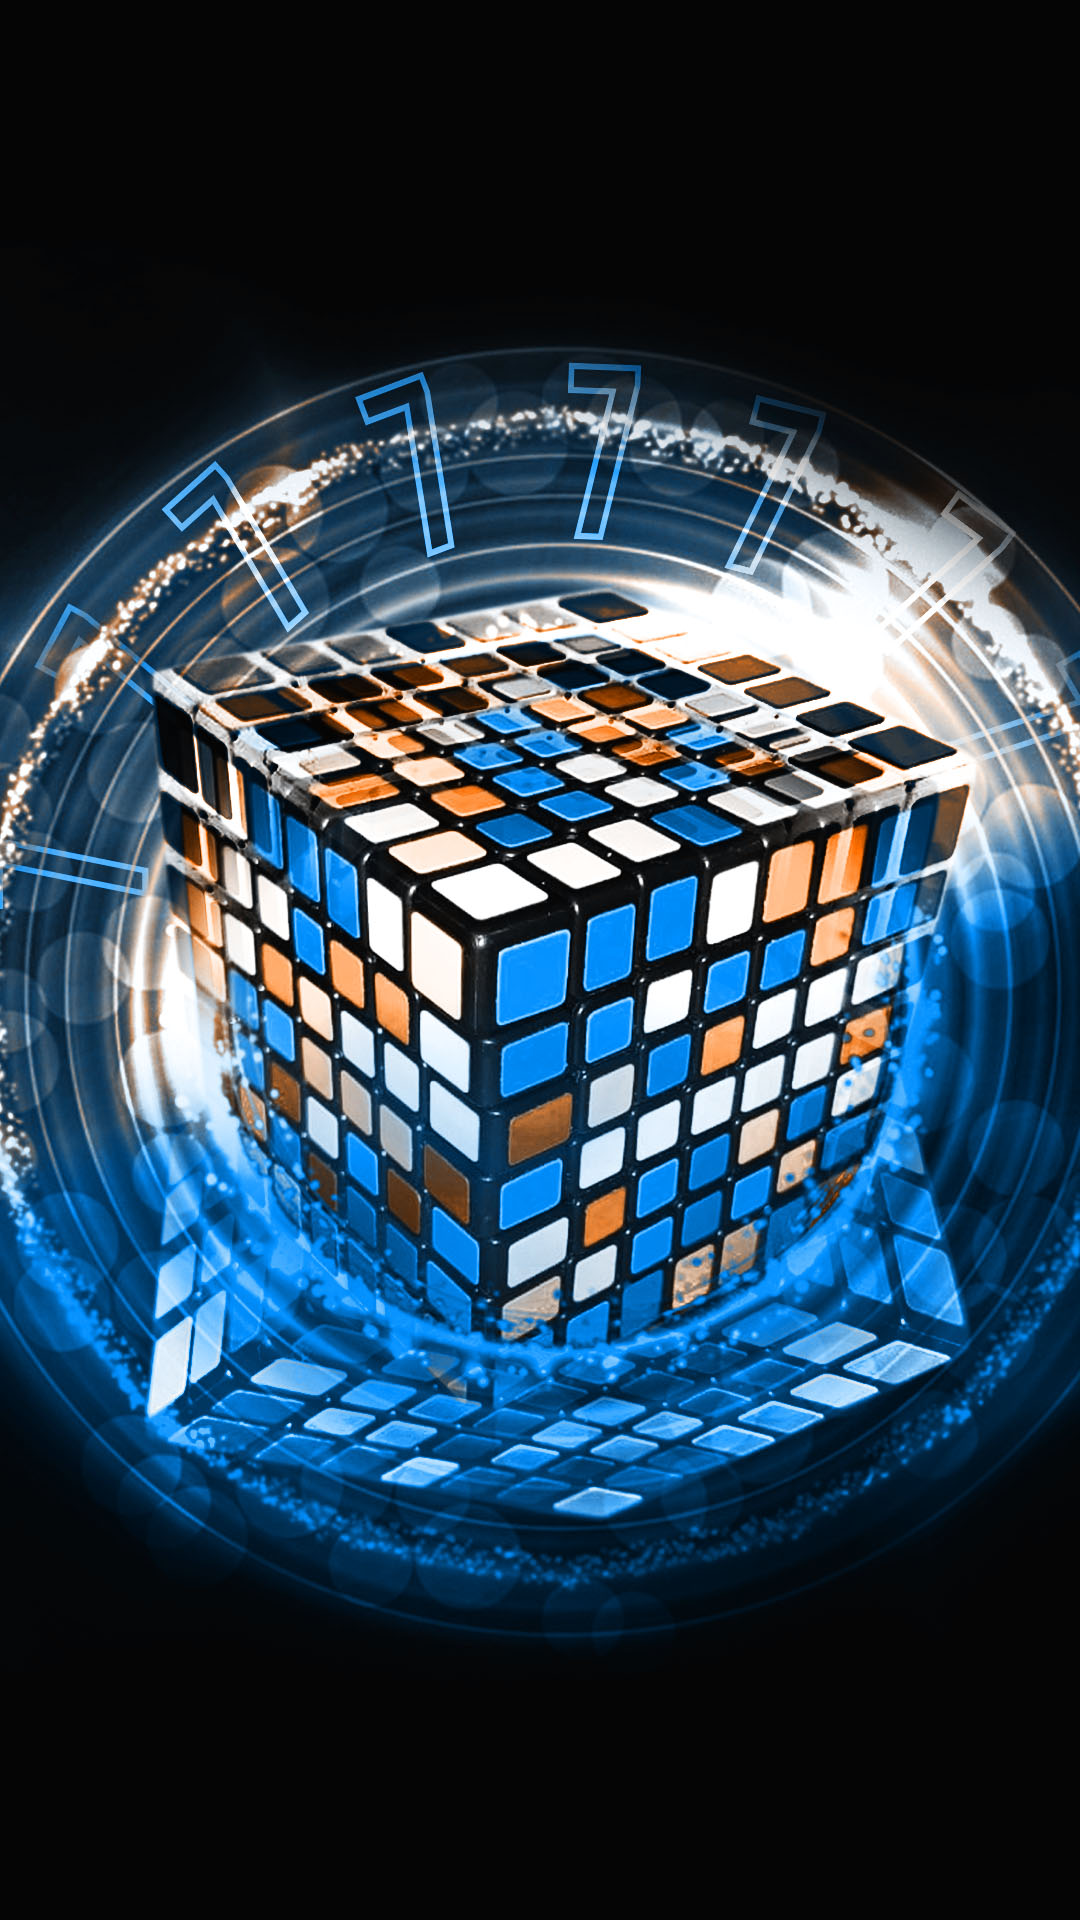 Wallpaper Rubik Cube 7x7 by Pceudoart on DeviantArt